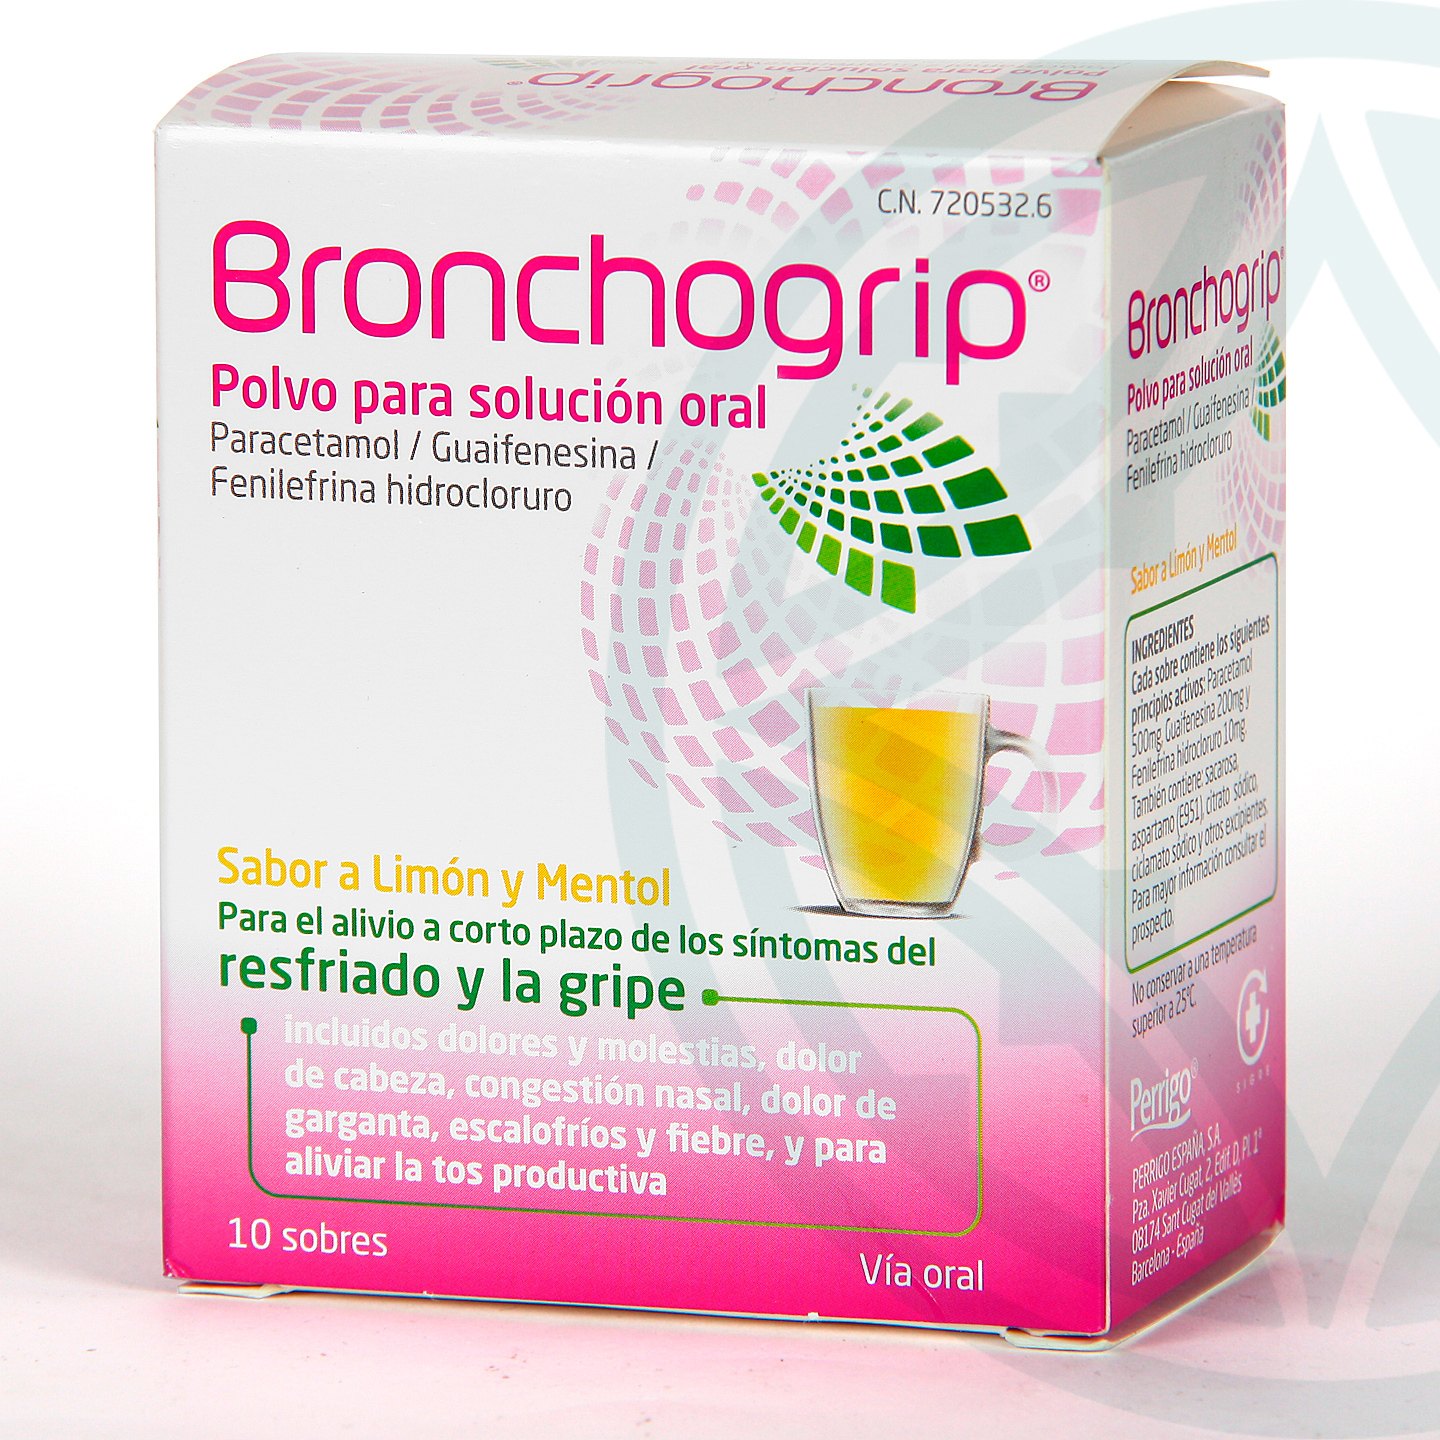 Bronchogrip Polvo solución oral 10 sobres | Farmacia Jiménez